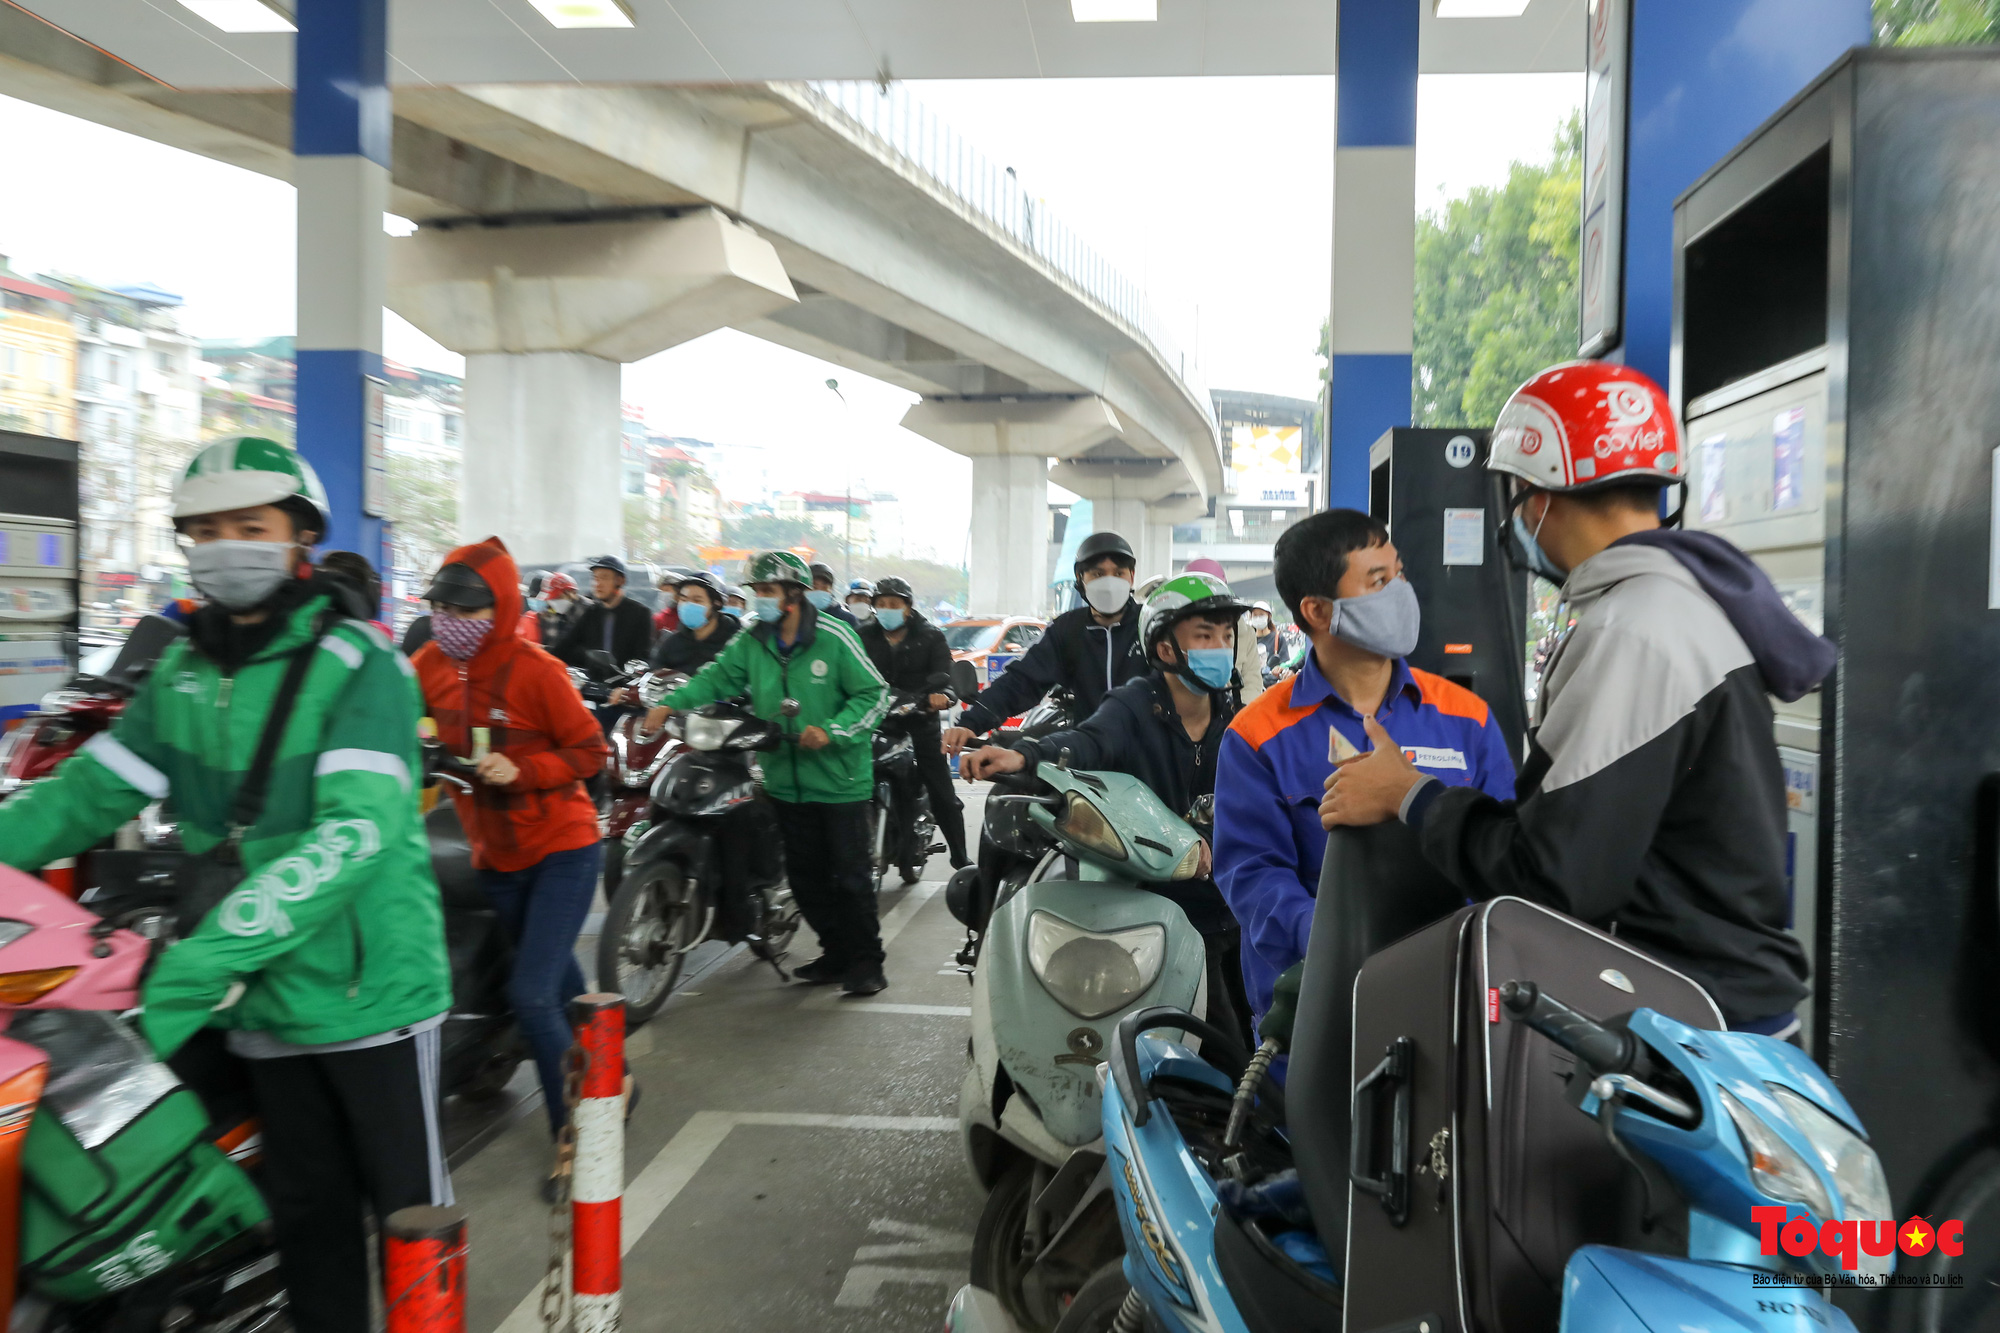 Hà Nội: Người dân xếp hàng dài mua xăng trước thông tin xăng tăng giá mạnh - Ảnh 4.